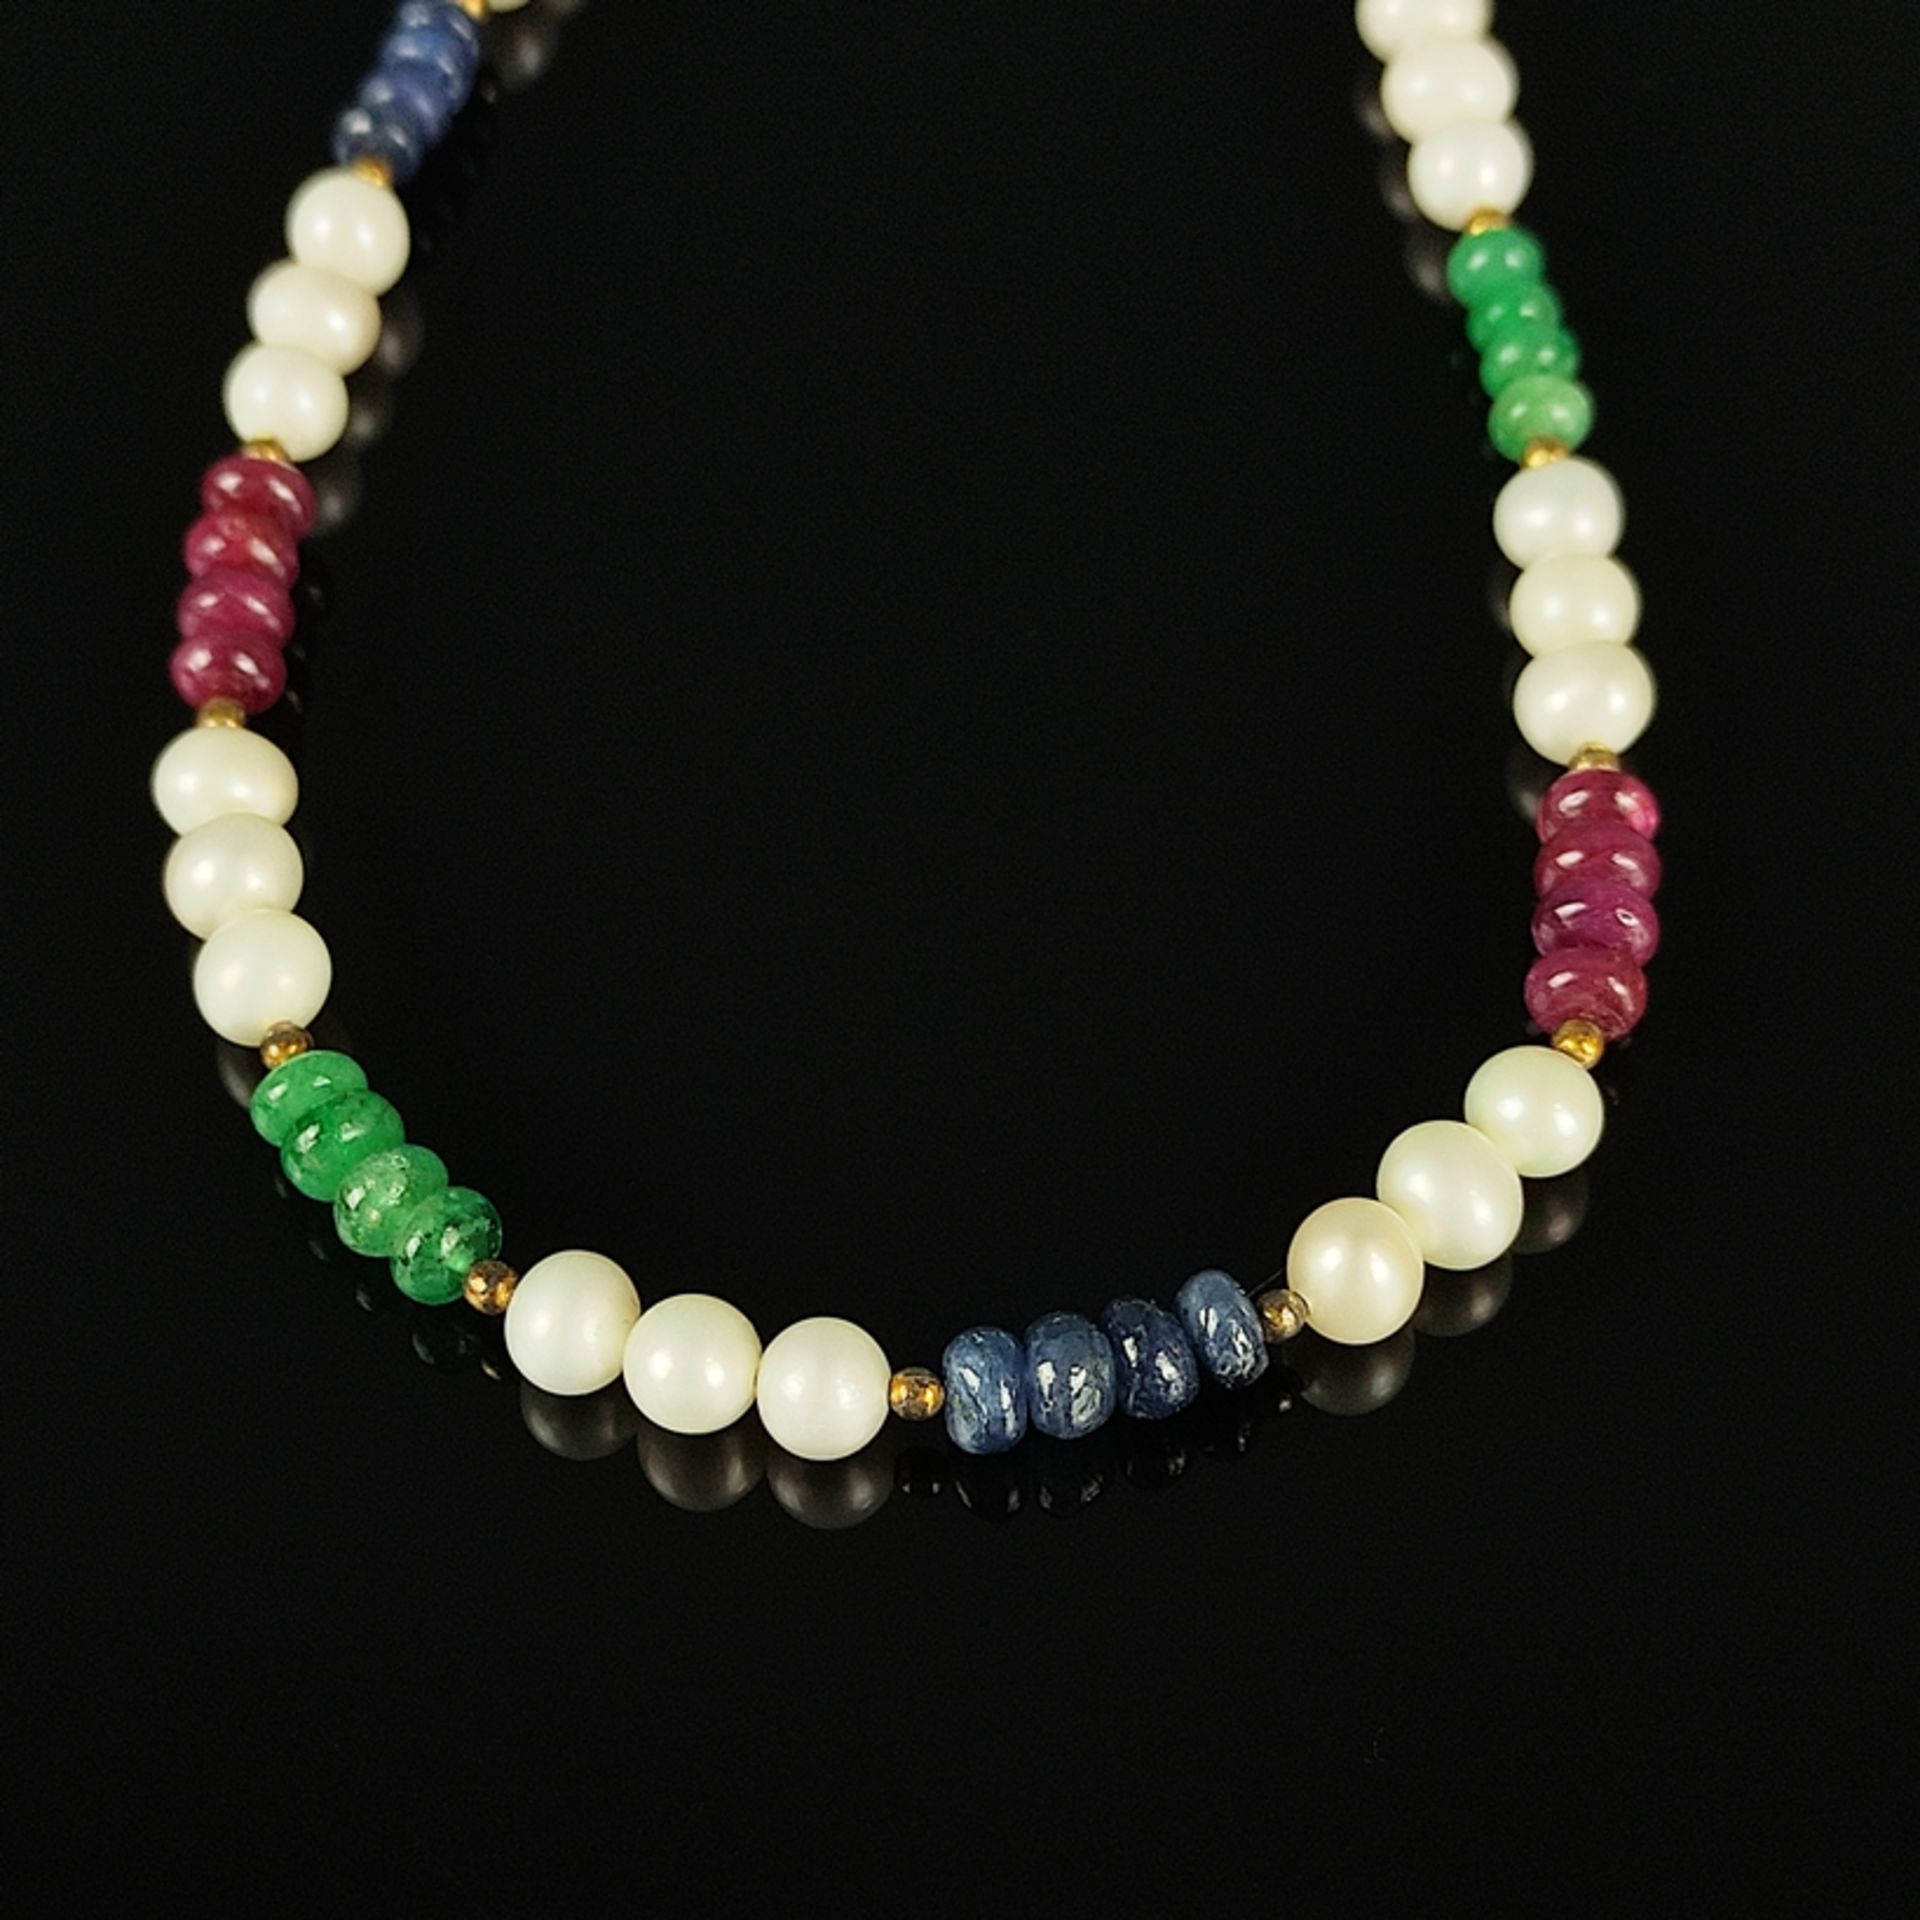 Saphir/Smaragd/Rubin-Kette mit Perlen, im Wechsel aufgefädelt, Karabinerverschluss, Sterlingsilber 